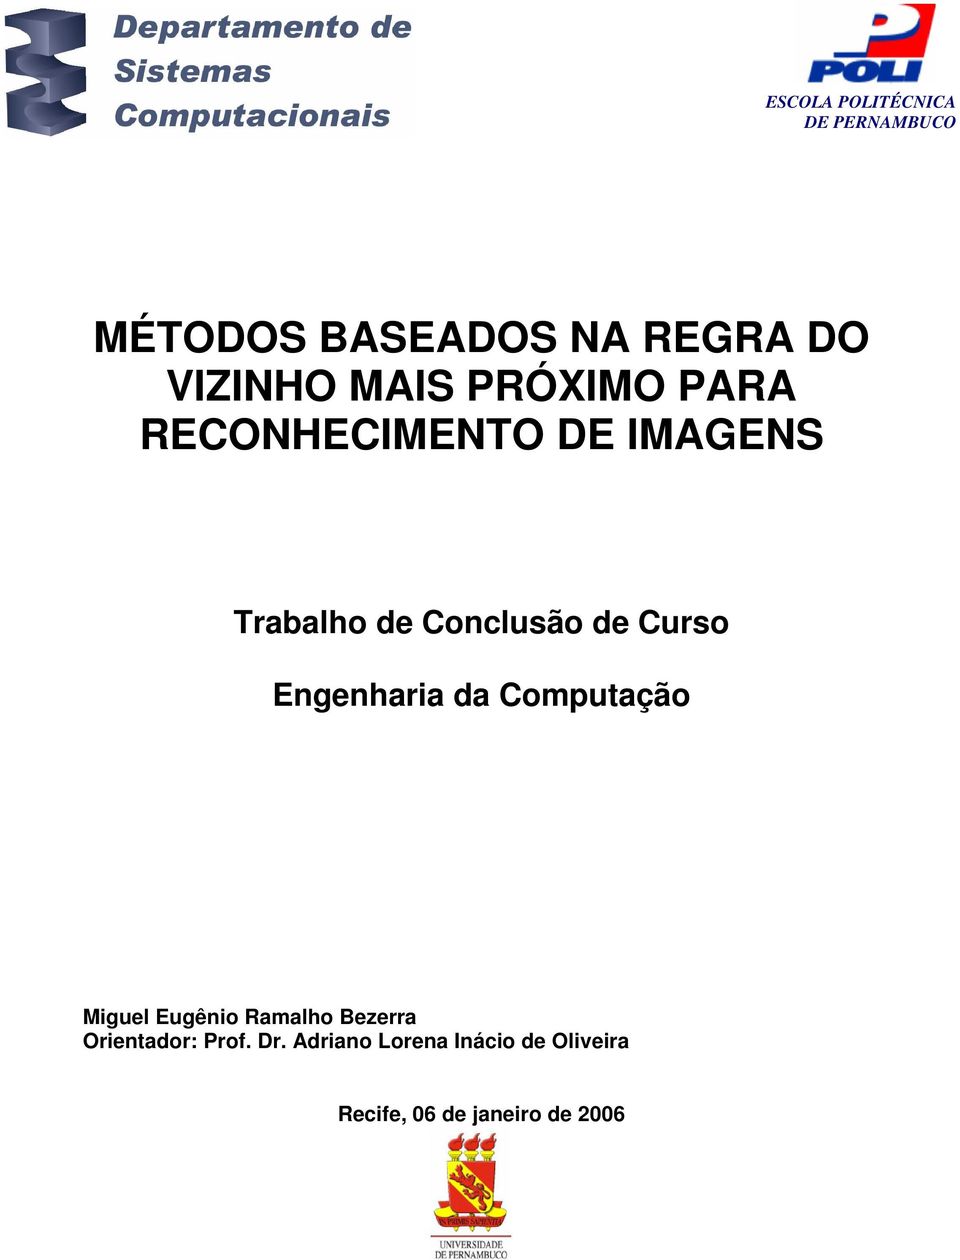 Engenharia da Computação Miguel Eugênio Ramalho Bezerra